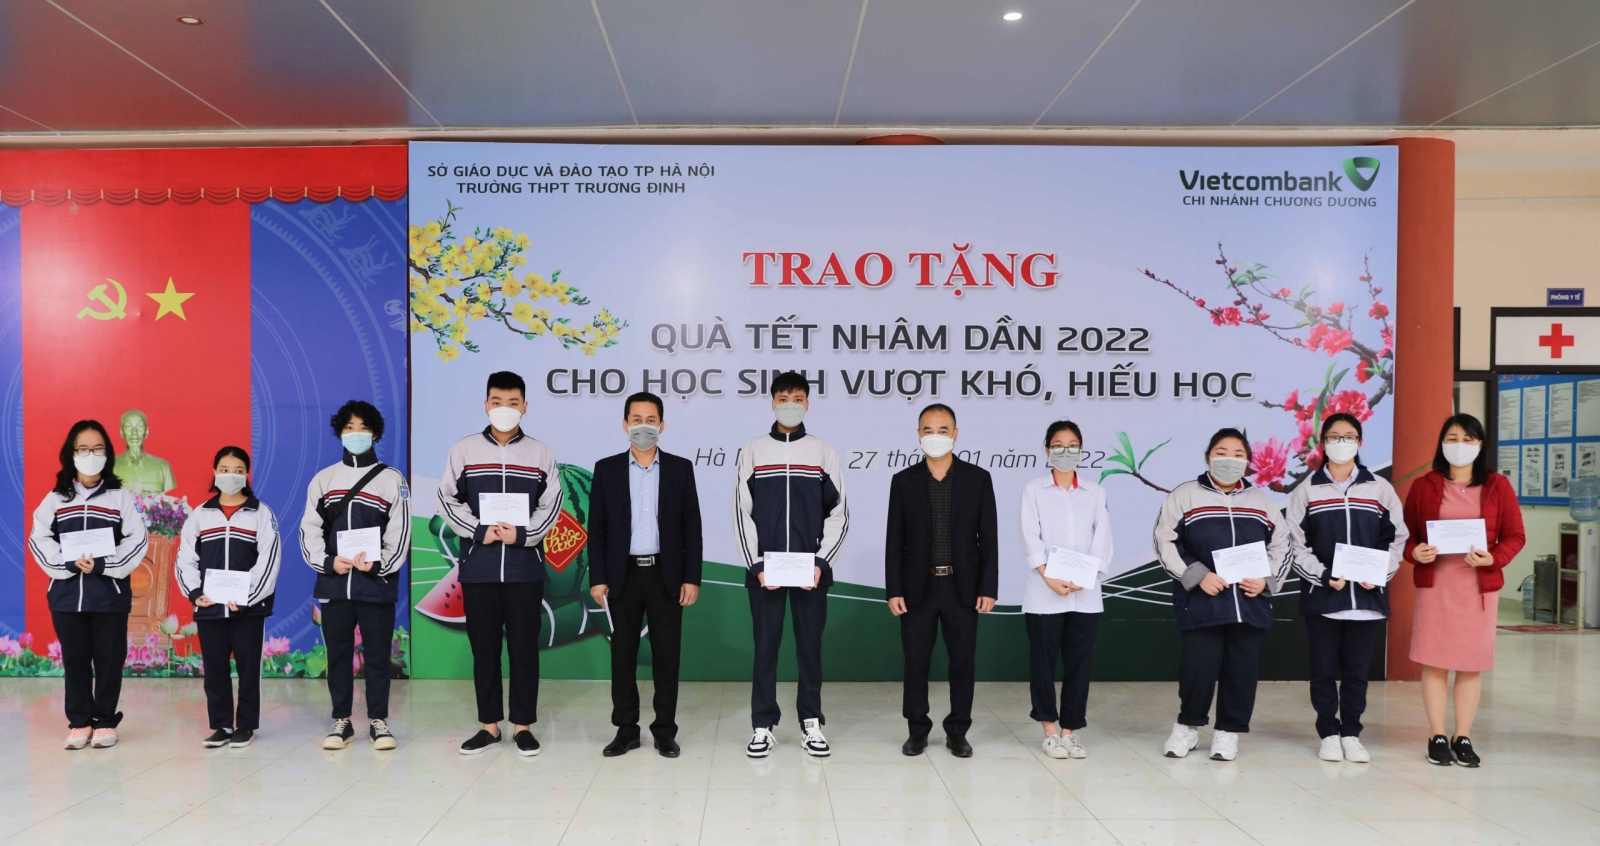 Trường THPT Trương Định Trao học bổng cho học sinh vượt khó, hiếu học